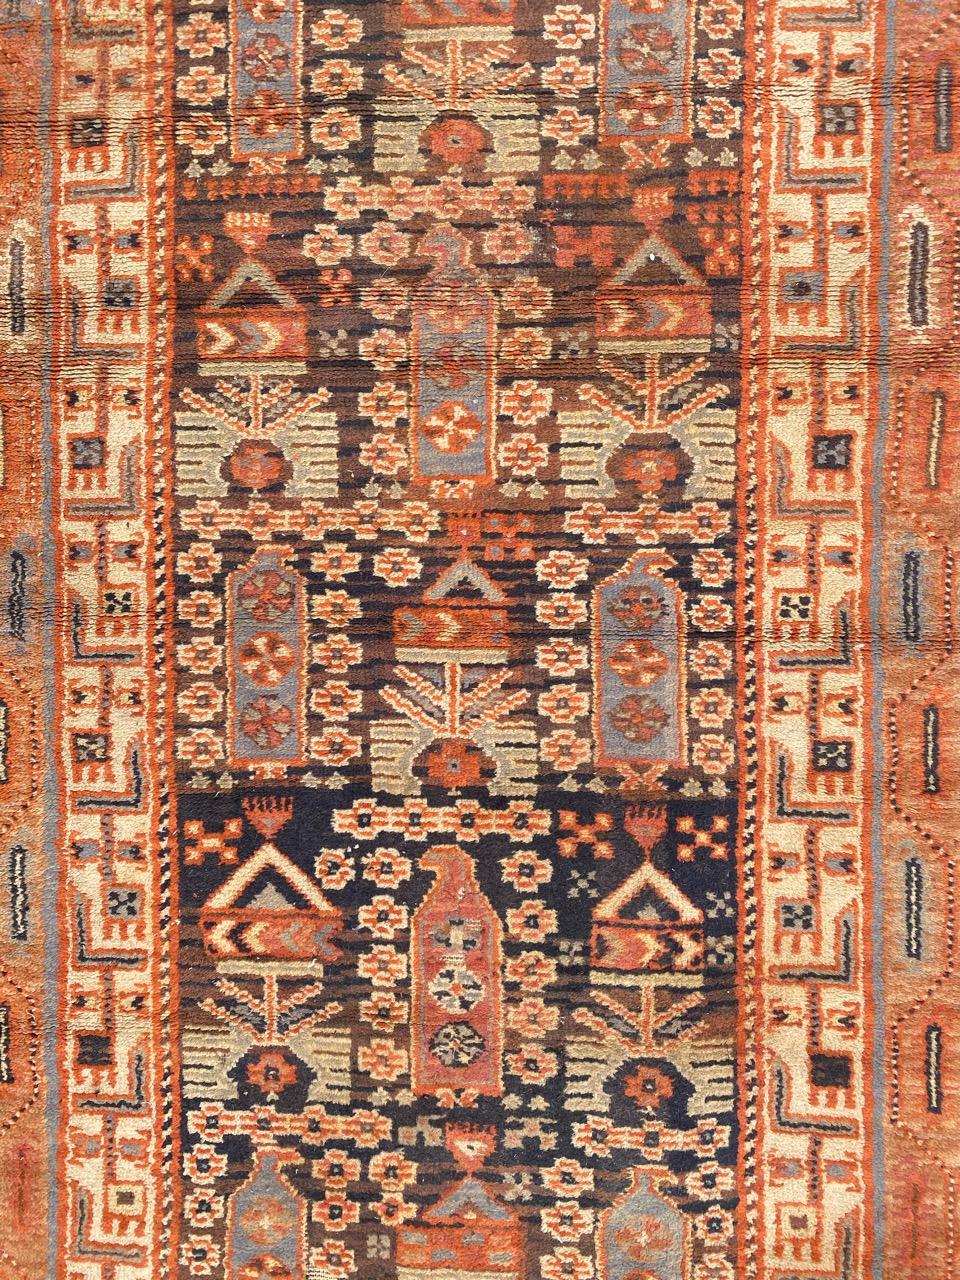 Schöner französischer Knüpfteppich aus dem frühen 20. Jahrhundert mit schönem persischem Muster und schönen Farben, vollständig mit Wollsamt auf Baumwollgrund geknüpft.